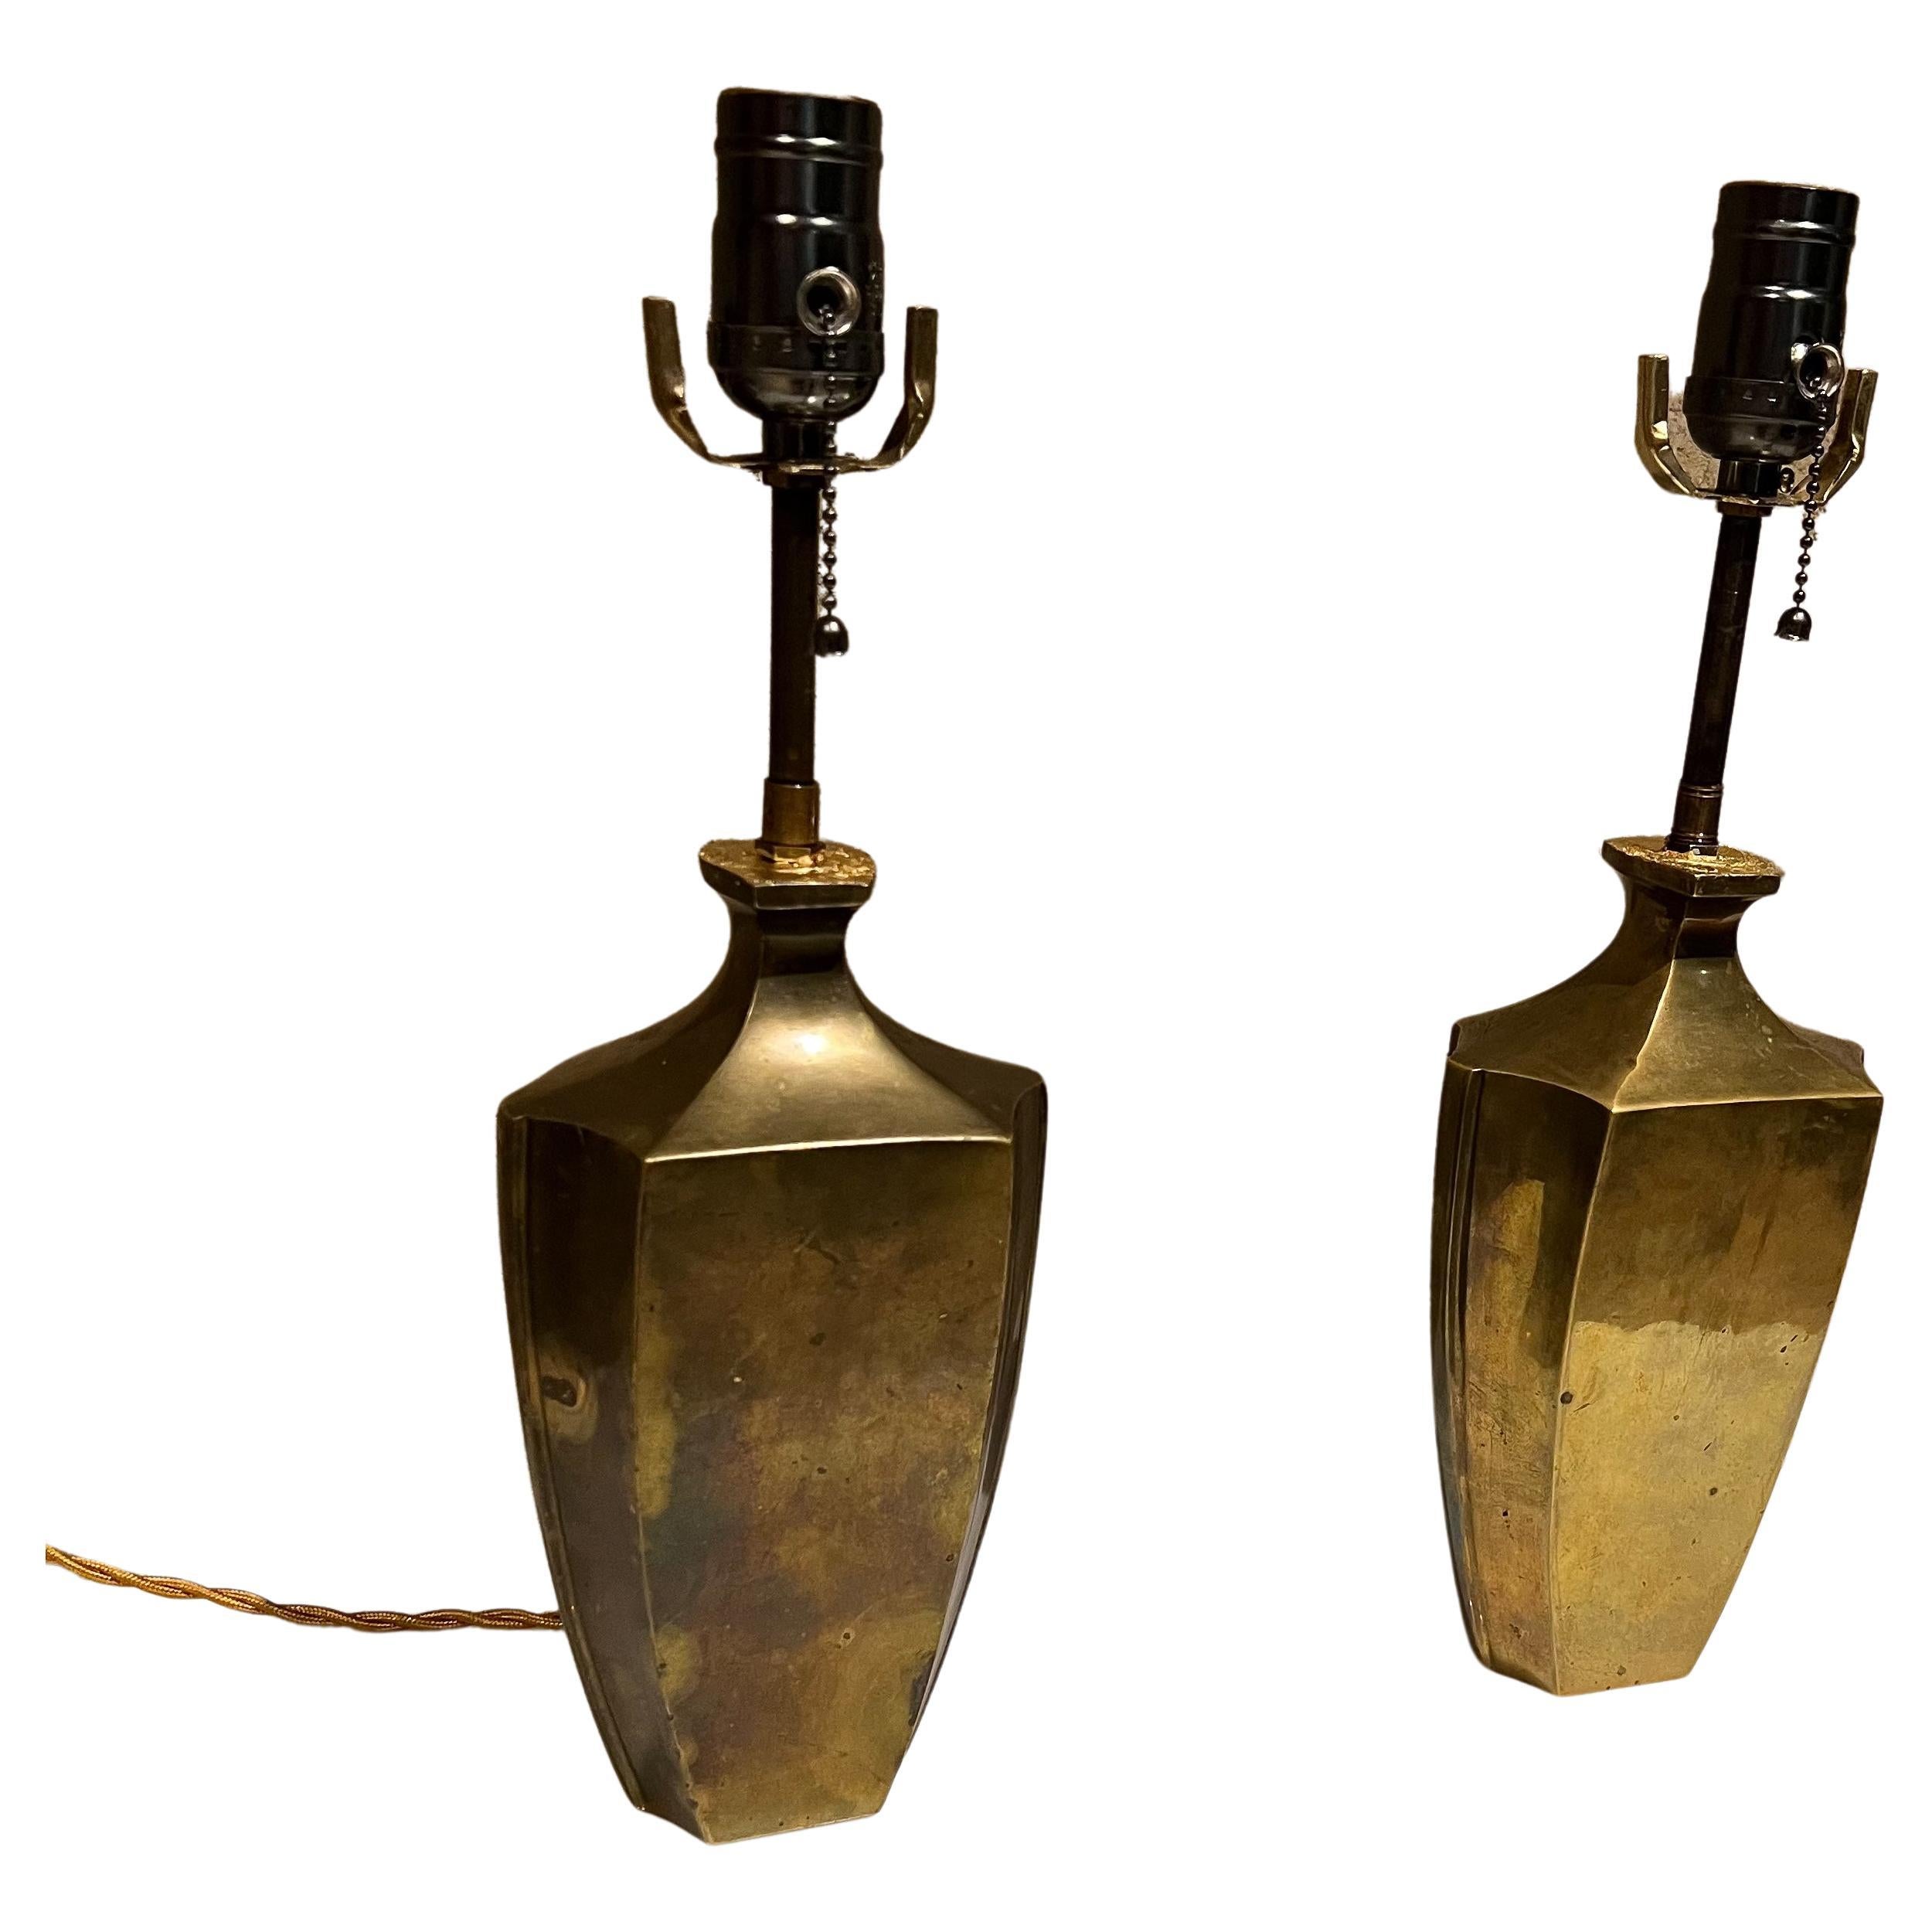 Jolie paire de lampes de table françaises en bronze des années 1950, fabriquées en France